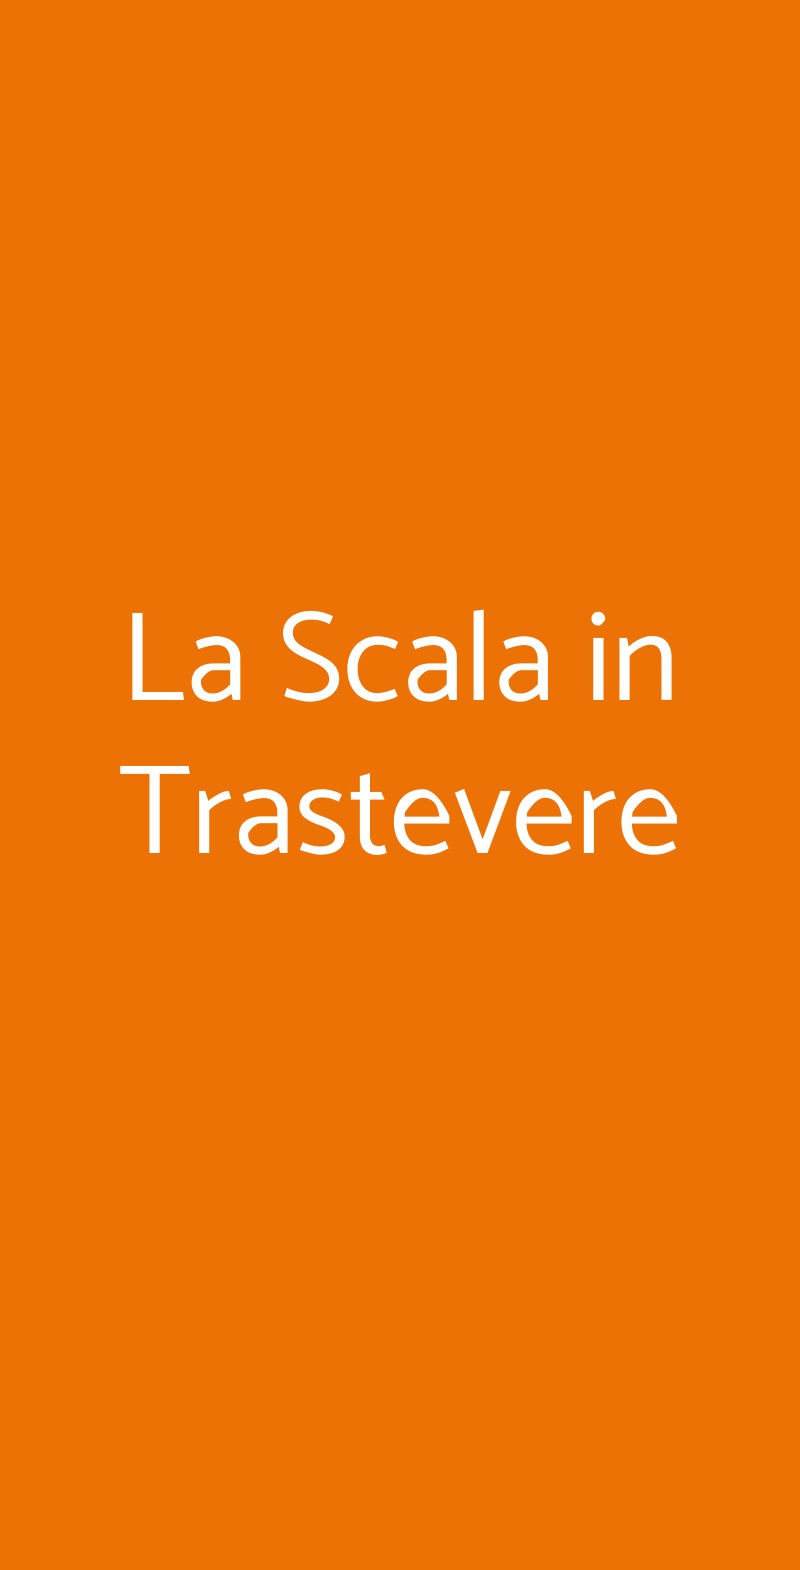 La Scala in Trastevere Roma menù 1 pagina